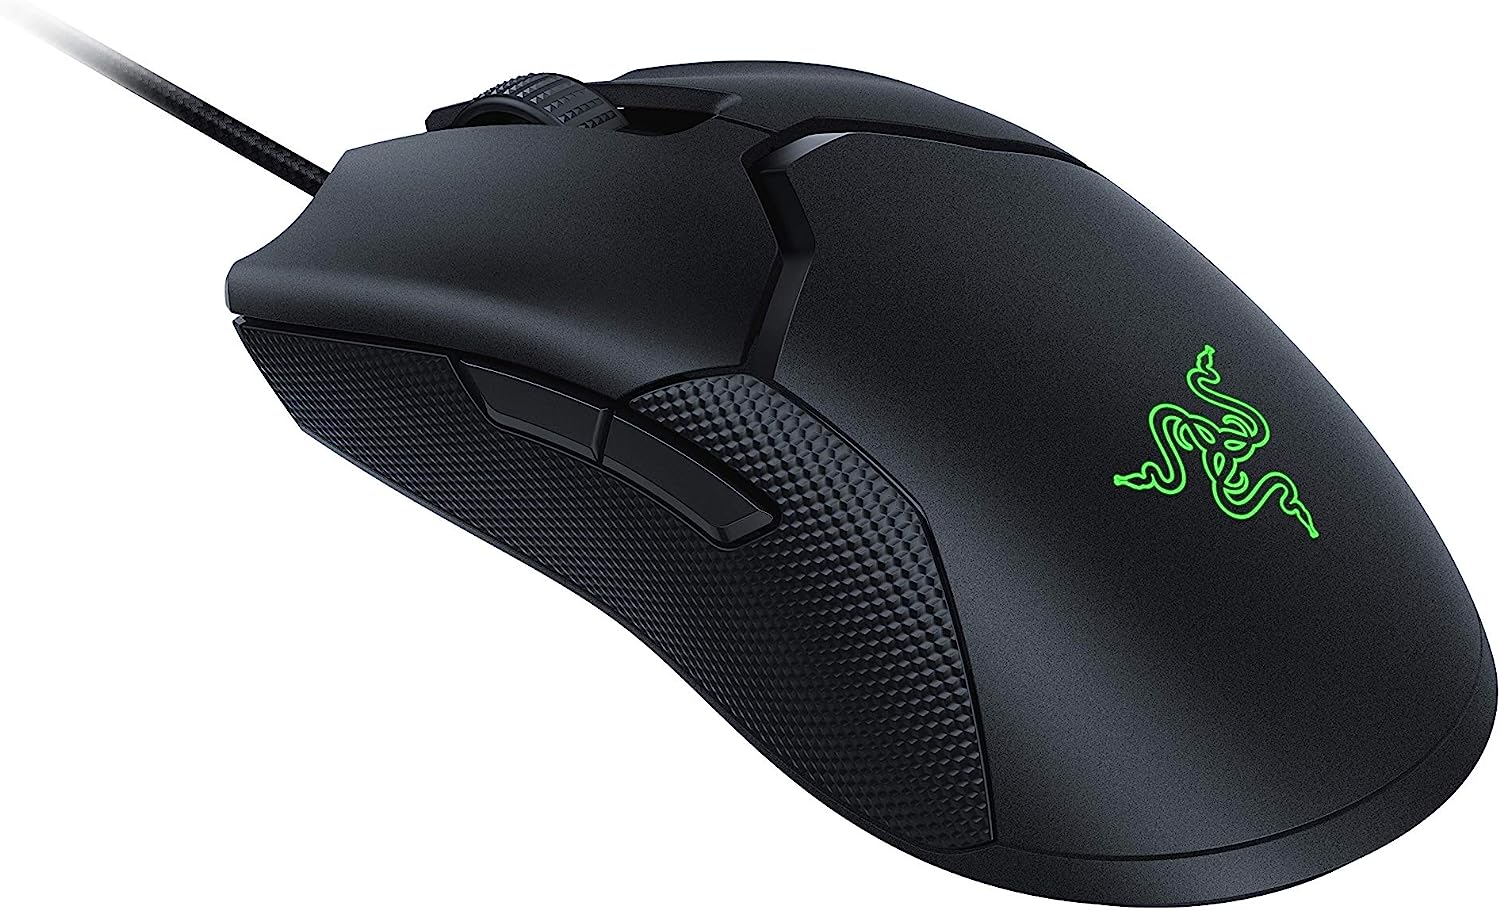 La Razer Viper 8KHZ est une souris gaming filaire conçue pour être ambidextre